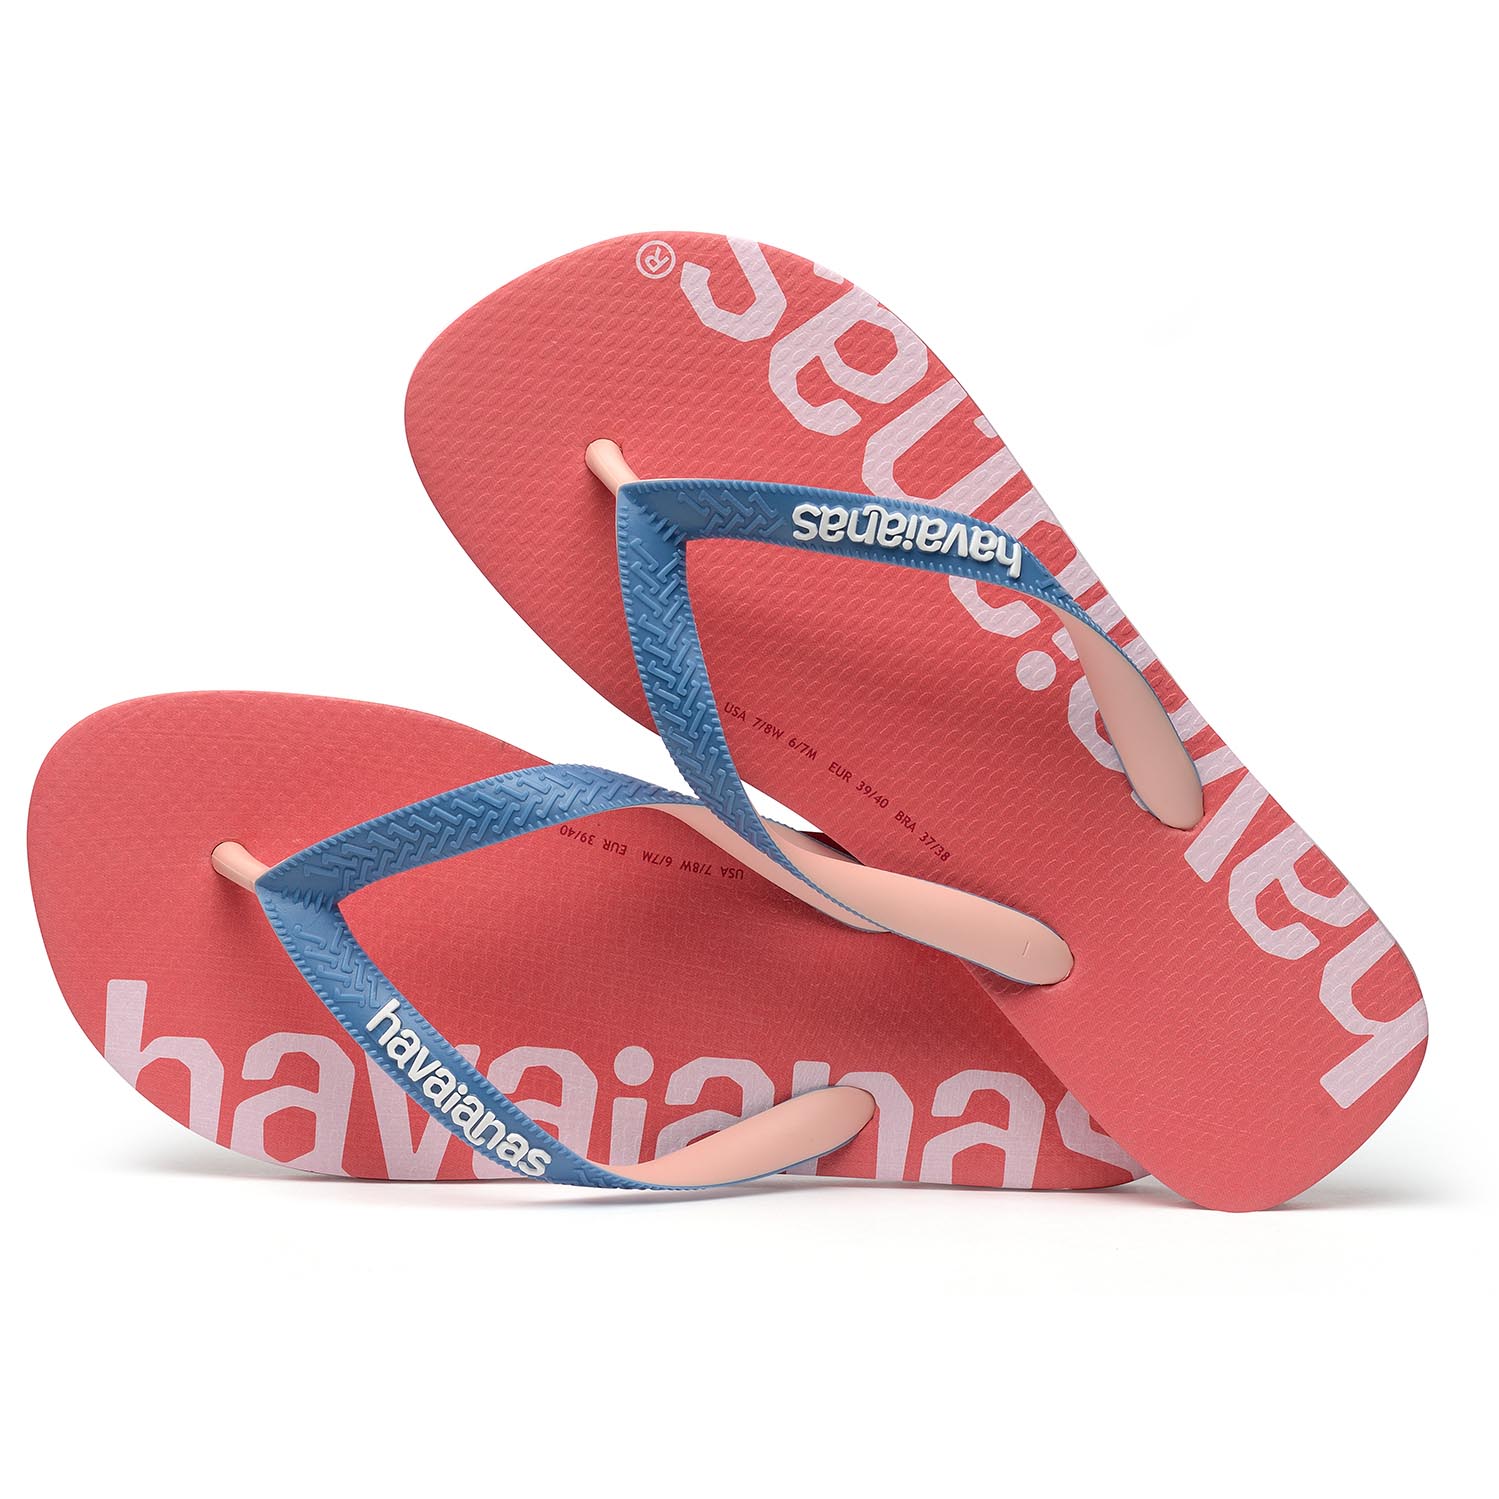 Havaianas Top Logomania Hightech Unisex Sandale Zehentrenner Badelatsche 4145727 Pink